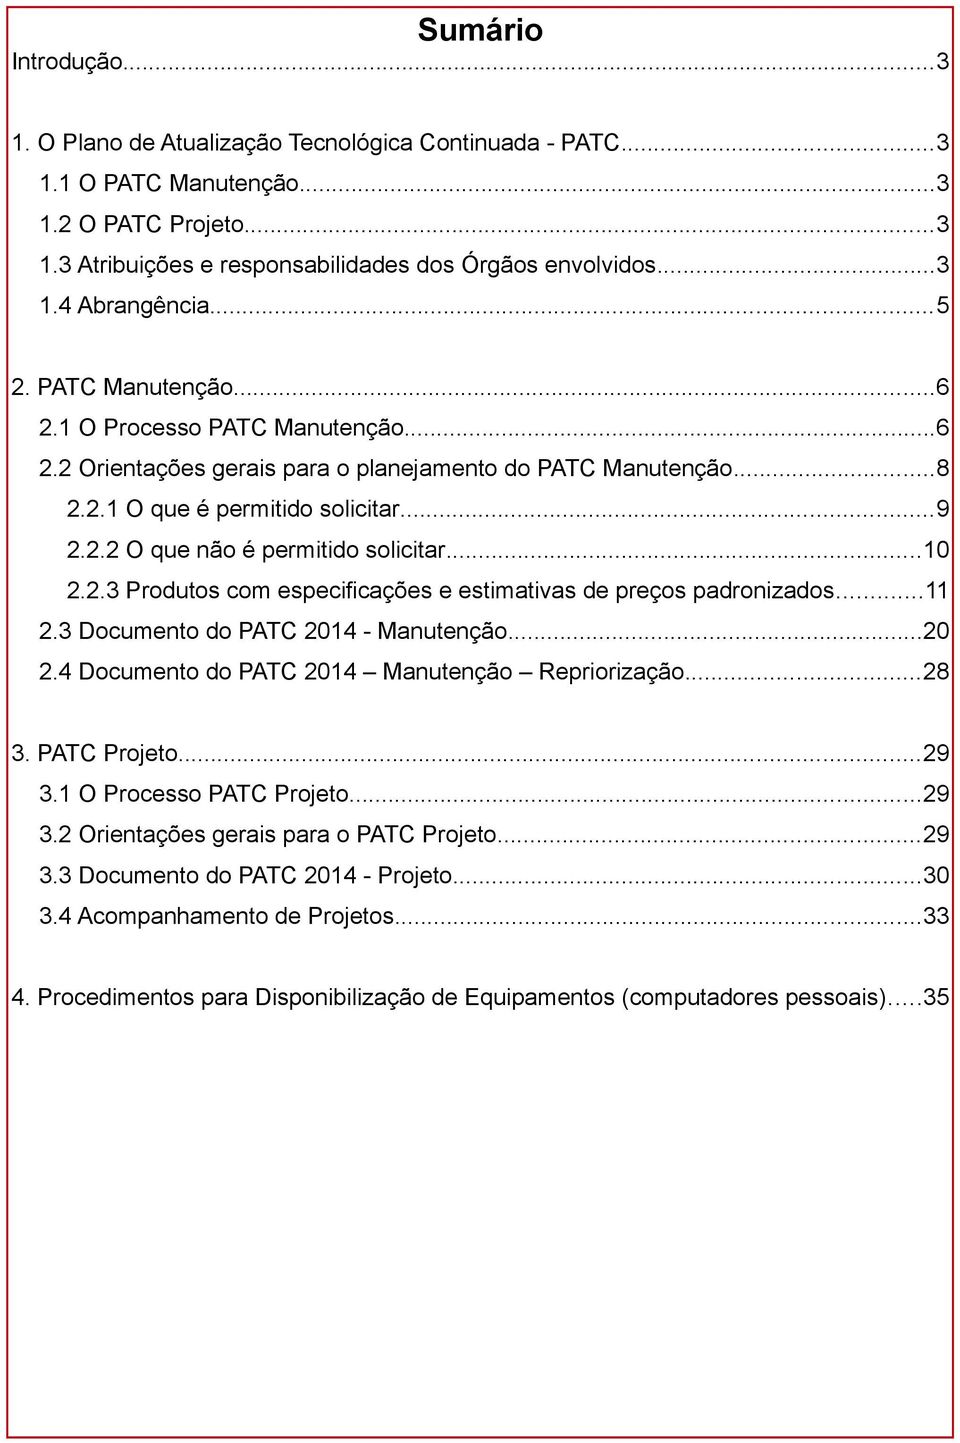 ..10 2.2.3 Produtos com especificações e estimativas de preços padronizados...11 2.3 Documento do PATC 2014 - Manutenção...20 2.4 Documento do PATC 2014 Manutenção Repriorização...28 3. PATC Projeto.